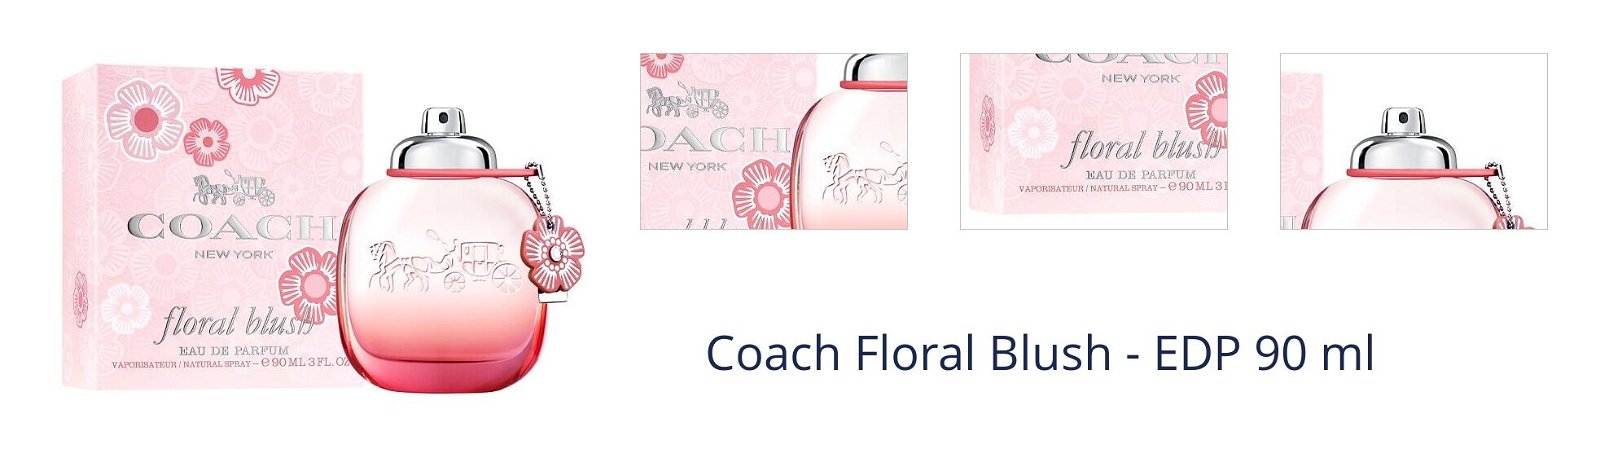 Coach Floral Blush - EDP 90 ml 1